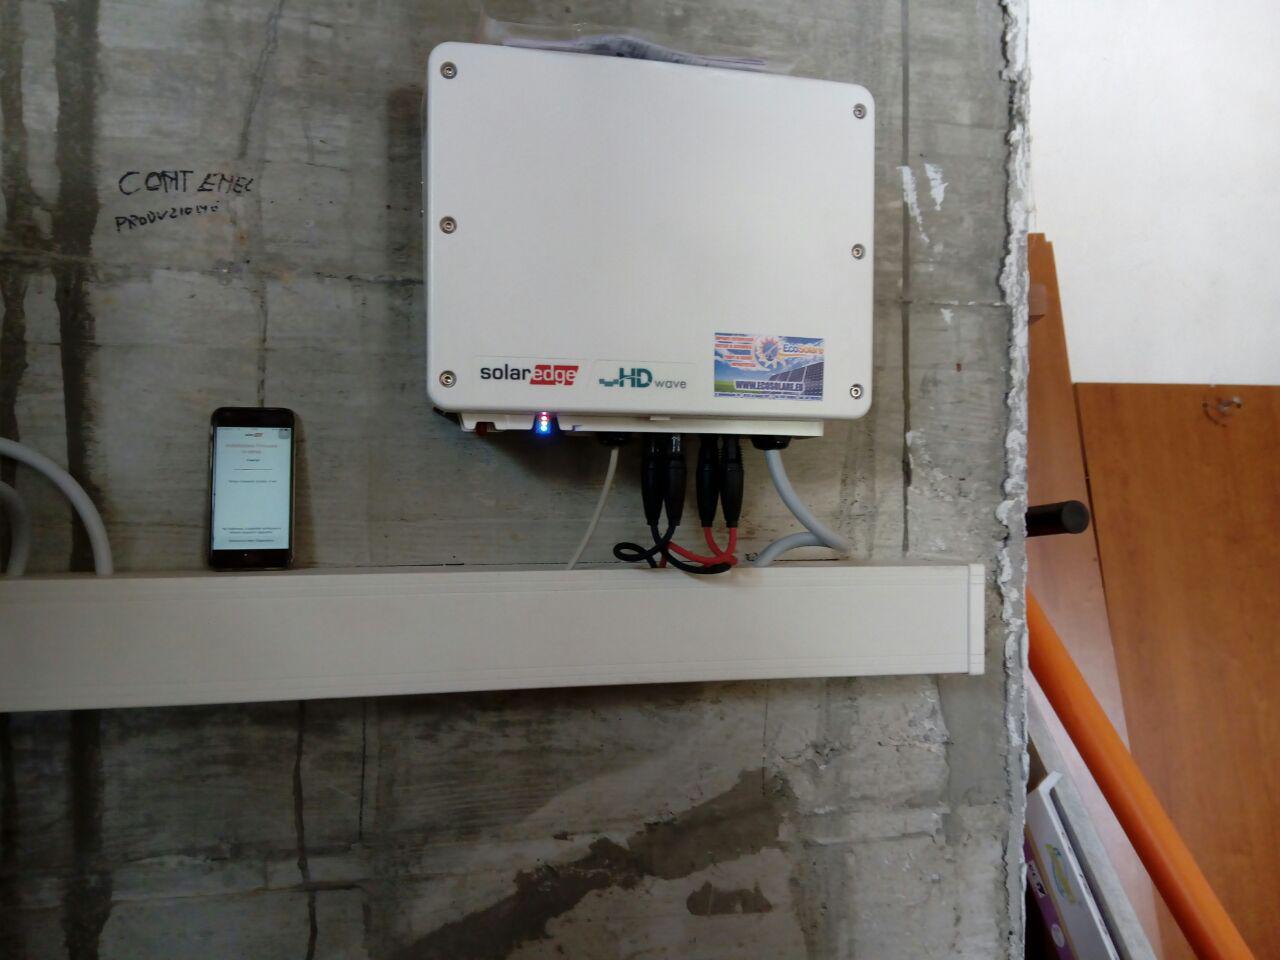 installazione impianto fotovoltaico 4,3 kW pannelli soalri Sunpwoer Castiglione Chiavarese Genova